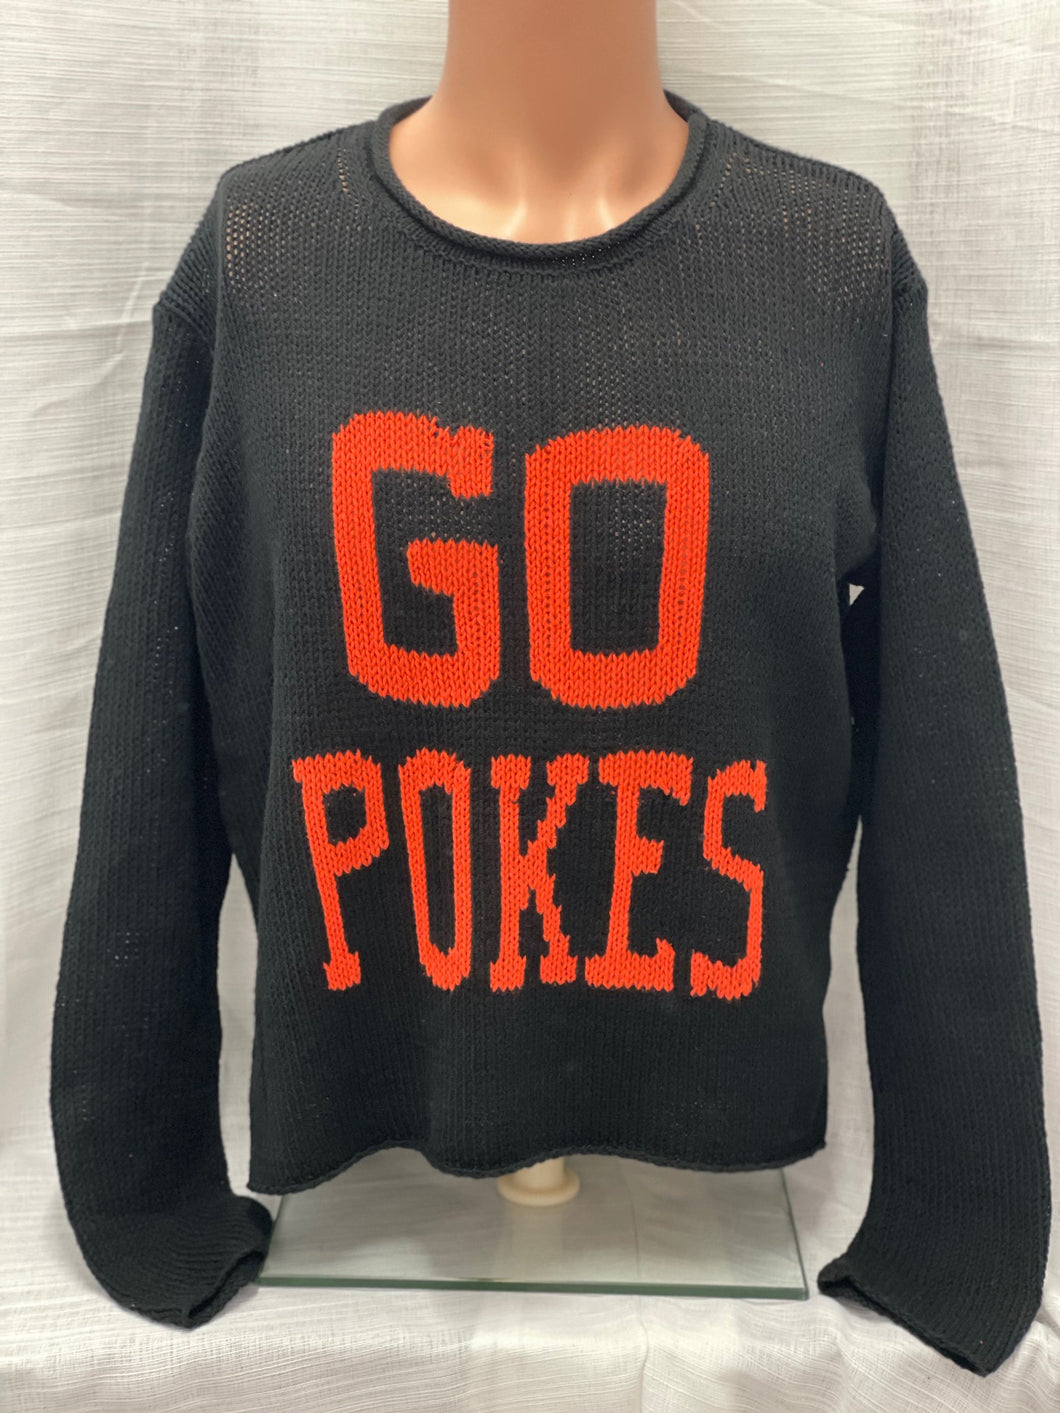 Go Pokes Sweater